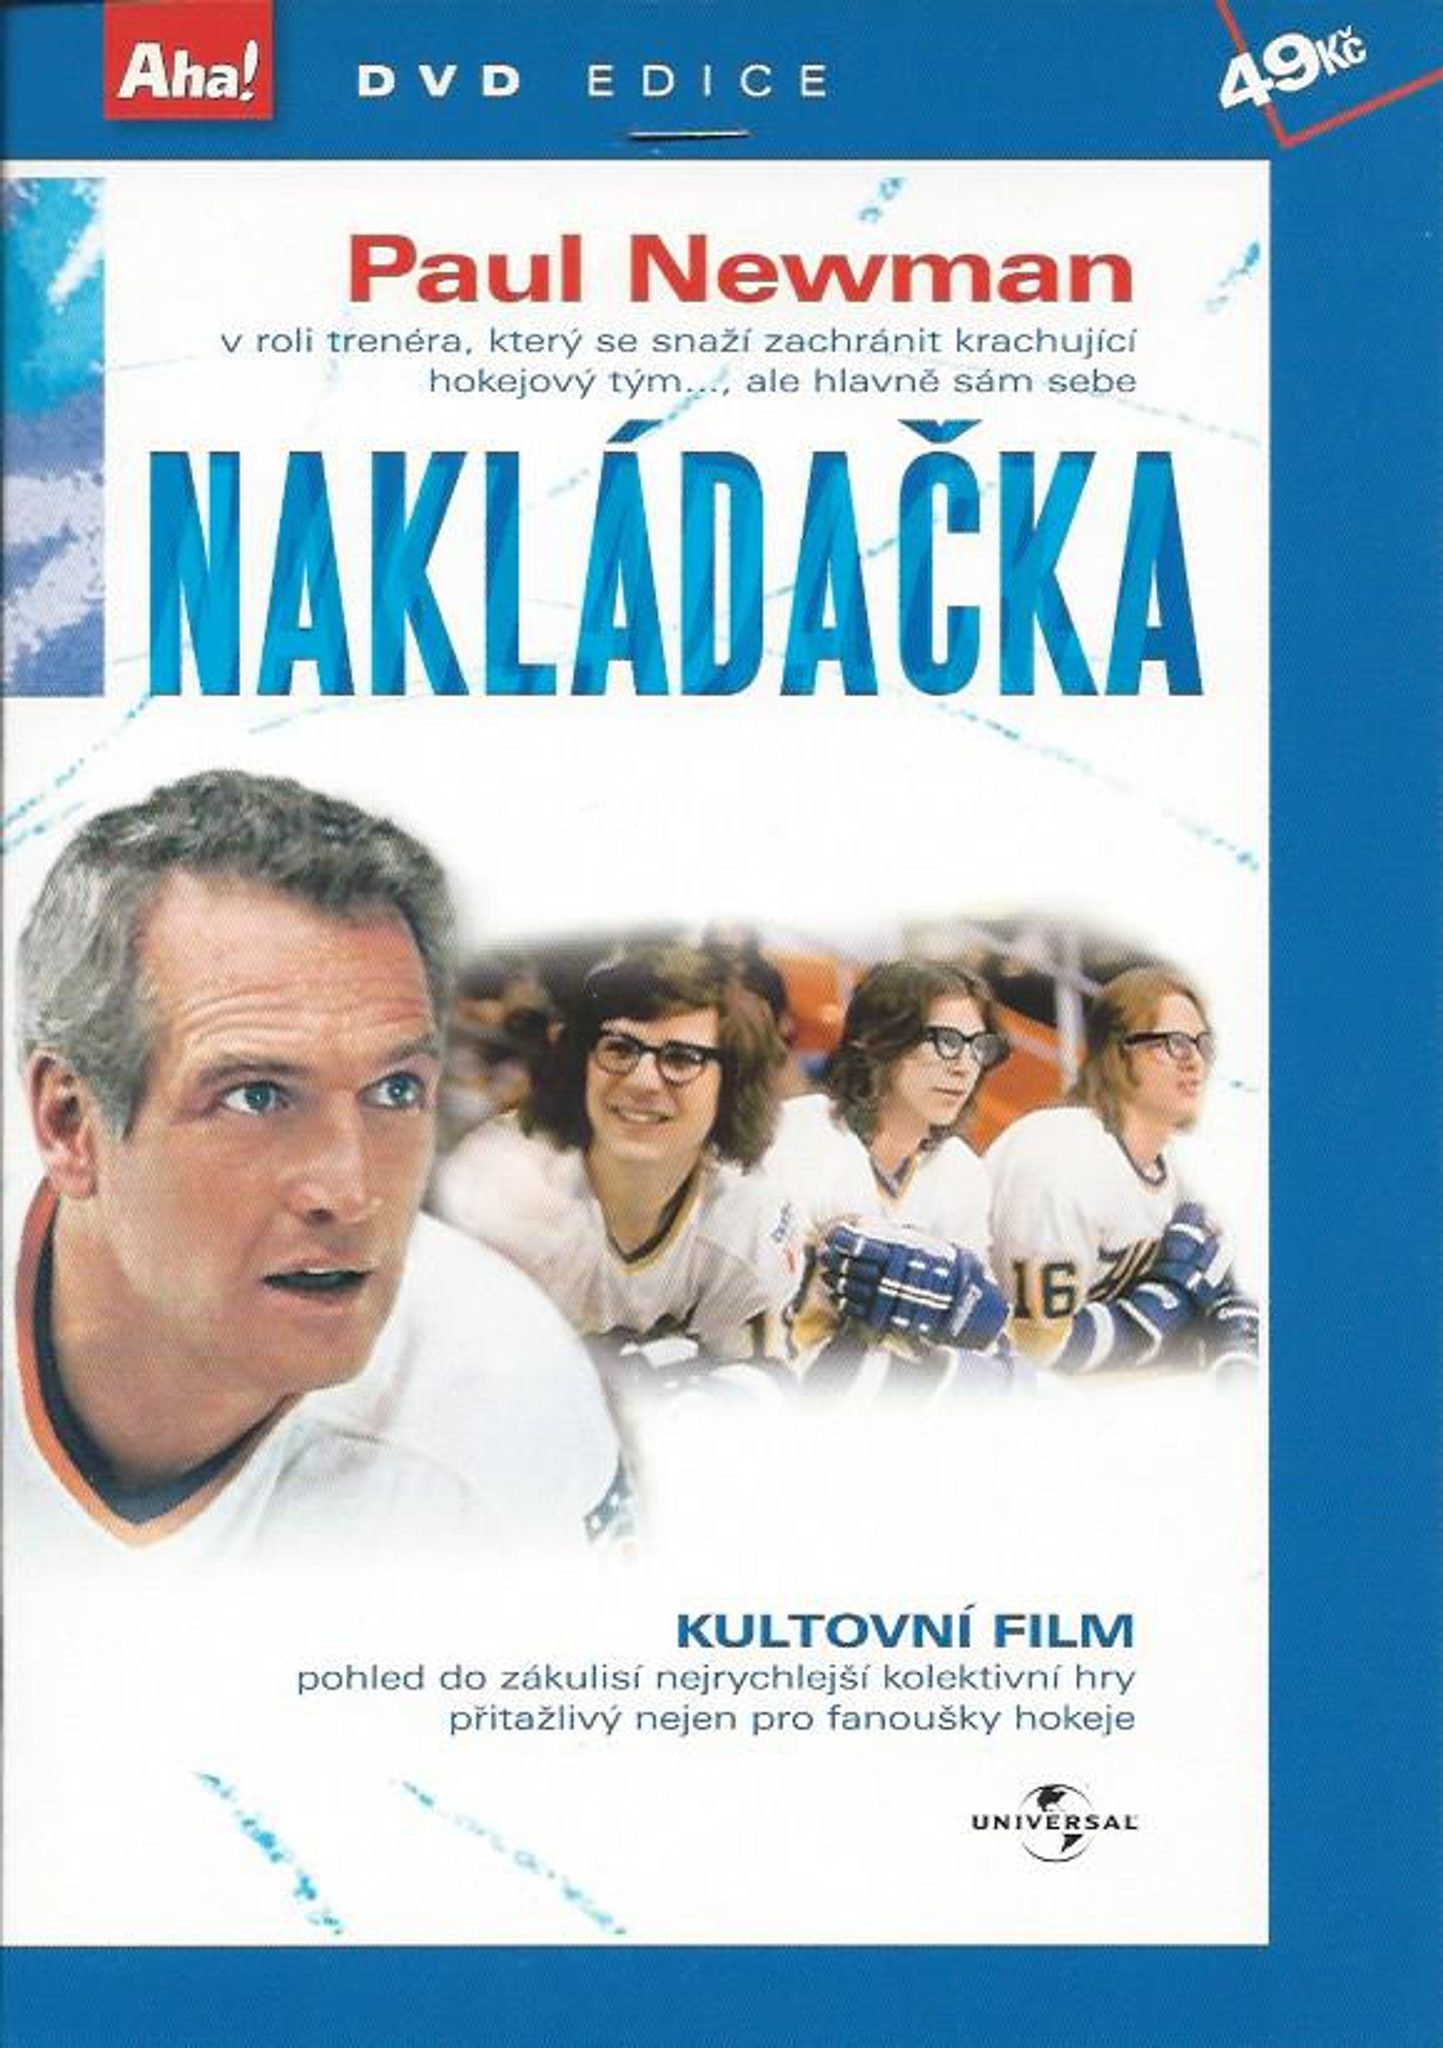 DVD Nakldaka